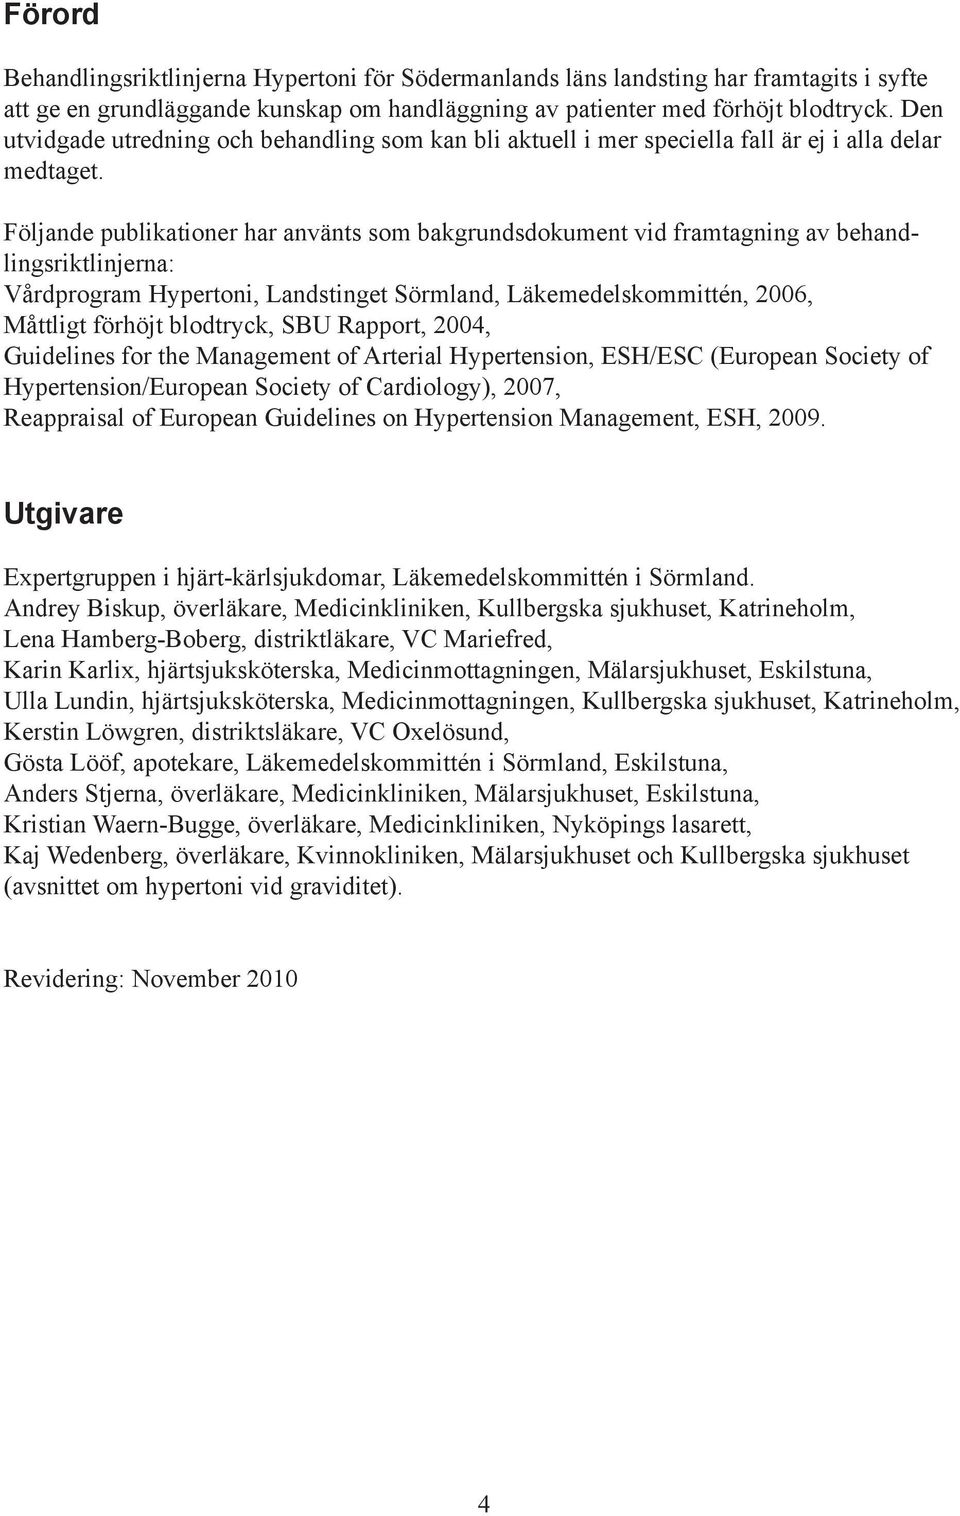 Följande publikationer har använts som bakgrundsdokument vid framtagning av behandlingsriktlinjerna: Vårdprogram Hypertoni, Landstinget Sörmland, Läkemedelskommittén, 2006, Måttligt förhöjt